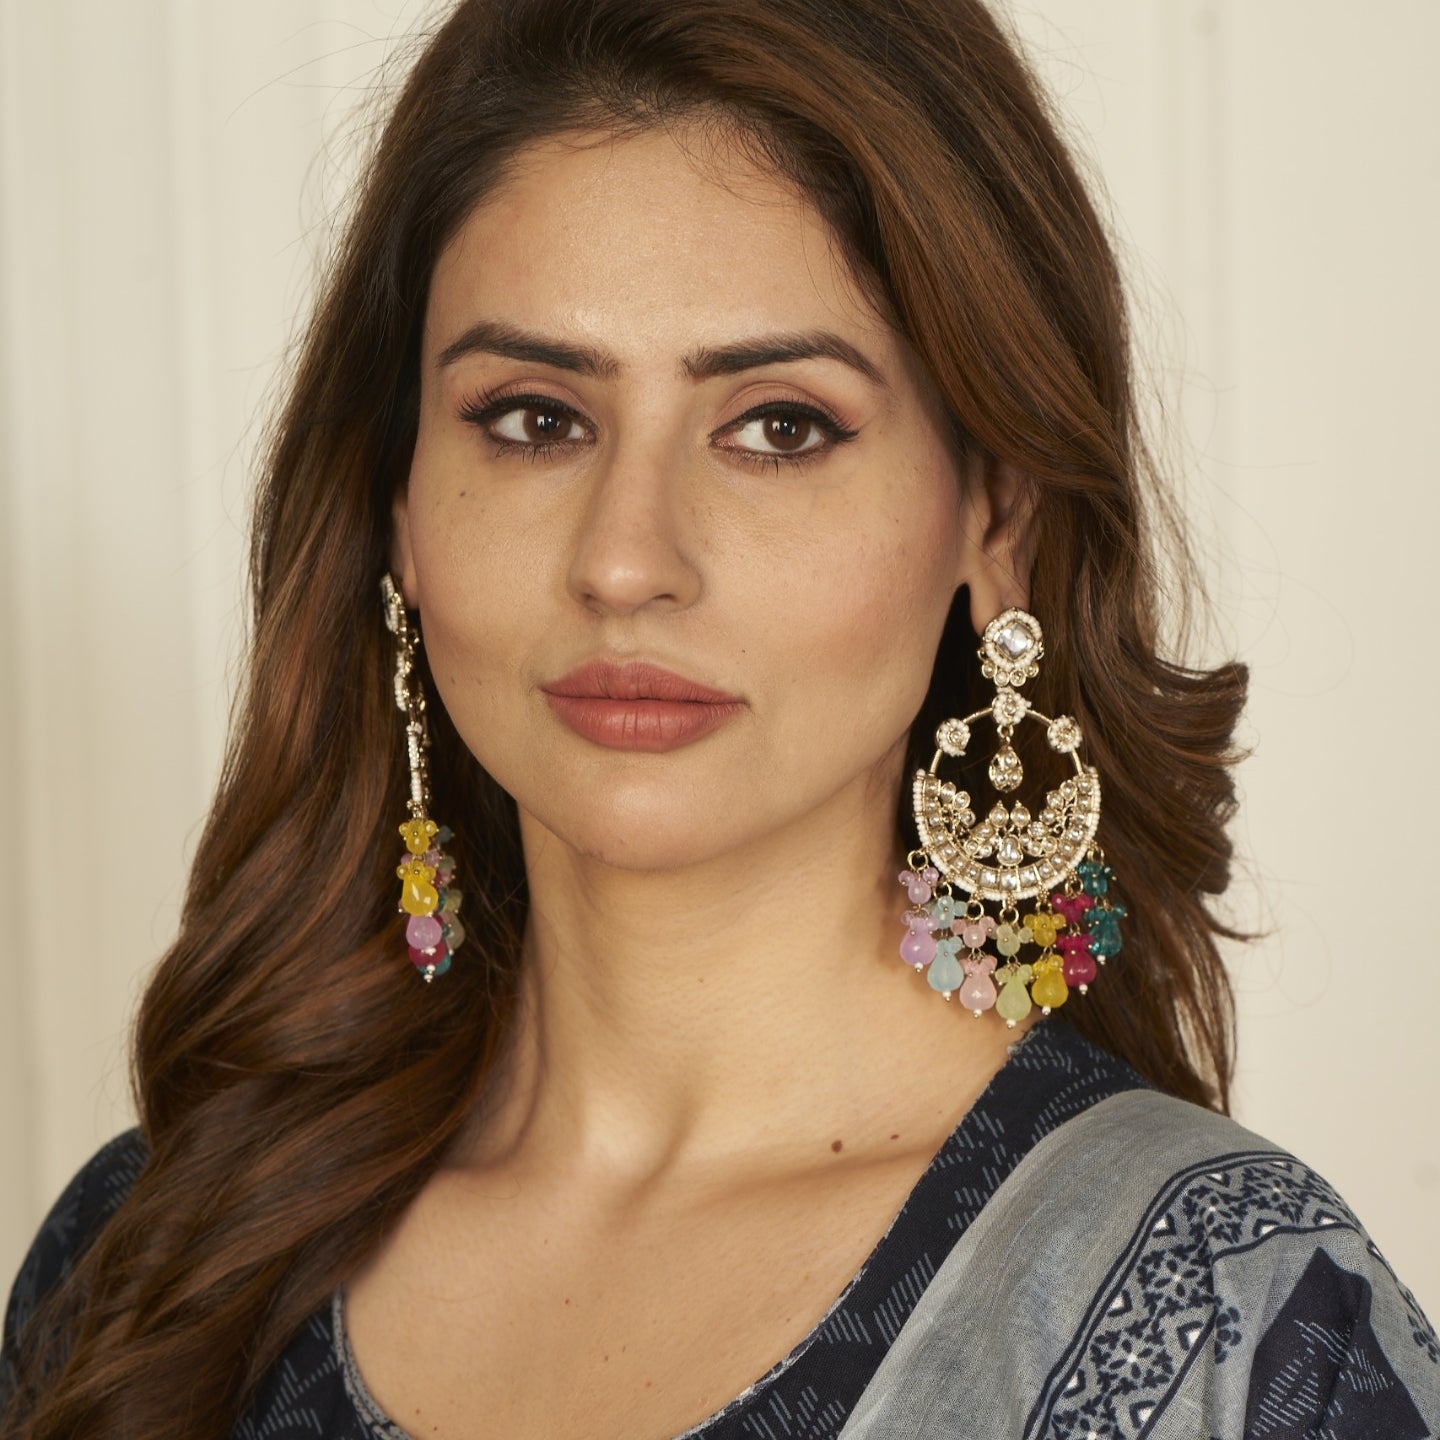 Mahira Kundan Chandbali Earrings - Multi